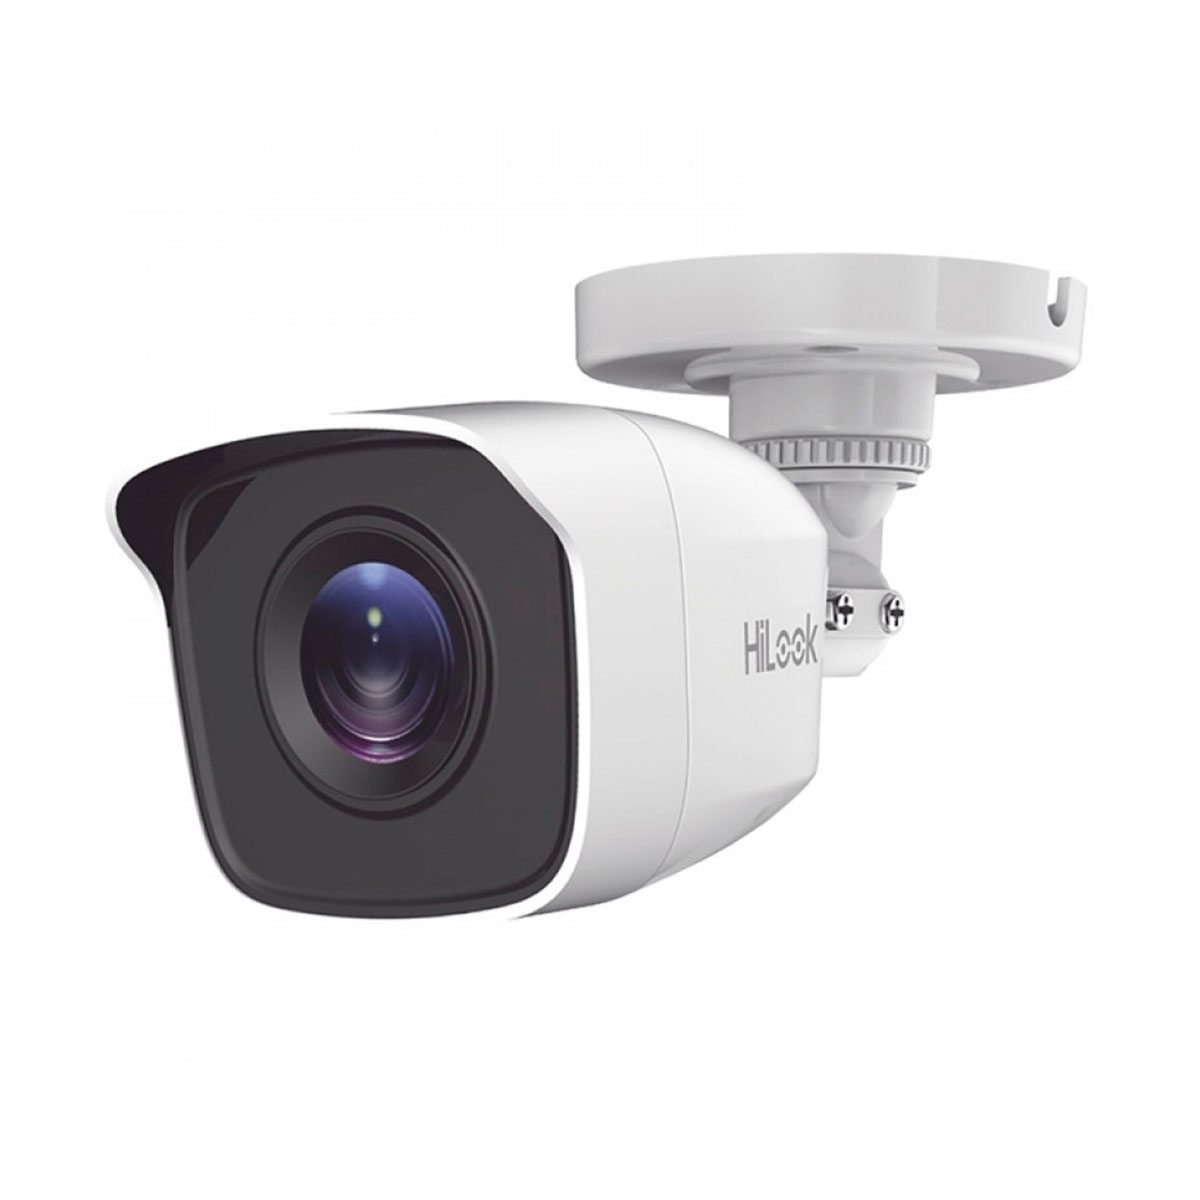 Câmera de Segurança Bullet HiLook THC-B120-P - Lente 2.8mm - Infravermelho - Full HD - Proteção contra chuva IP66